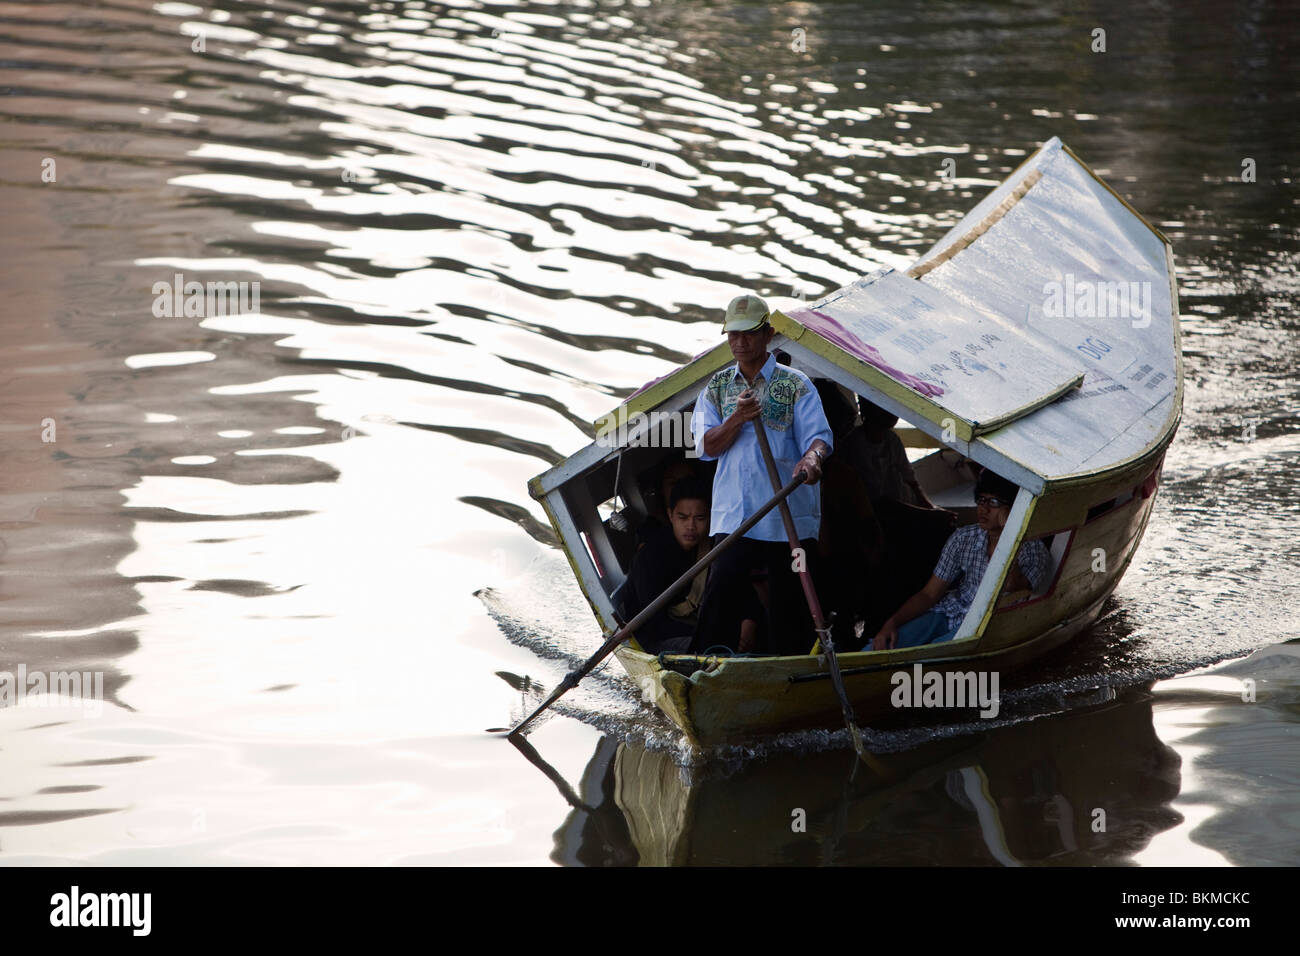 Tambang (bateau-taxi) sampan sur la rivière Sarawak. Kuching, Sarawak, Bornéo, Malaisie. Banque D'Images